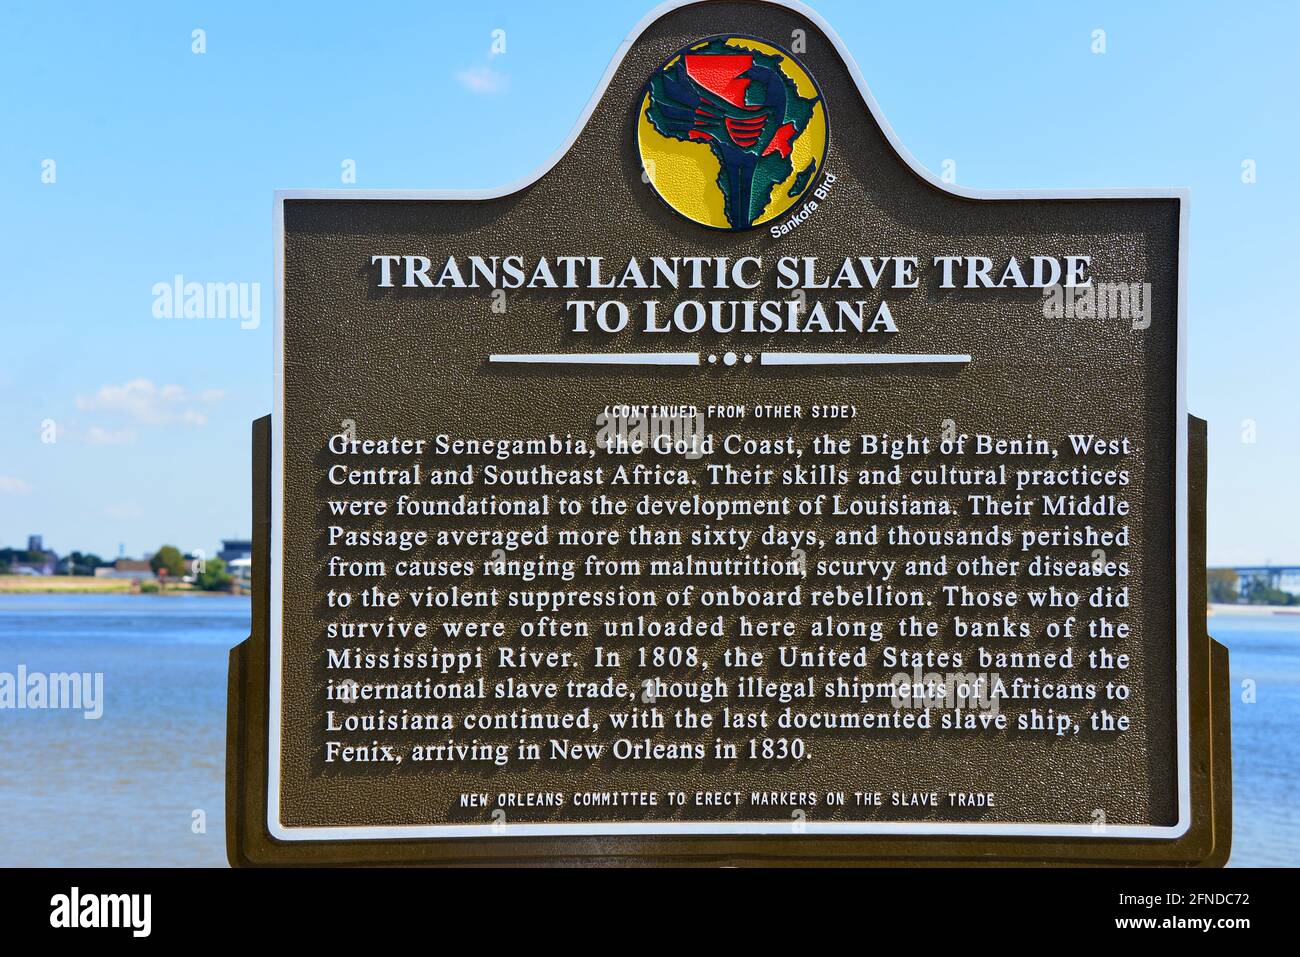 New Orleans, LA, USA - 26. September 2019: Gedenktafel in der Nähe des Mississippi-Flusses, auf der die Geschichte des transatlantischen Sklavenhandels beschrieben wird Stockfoto